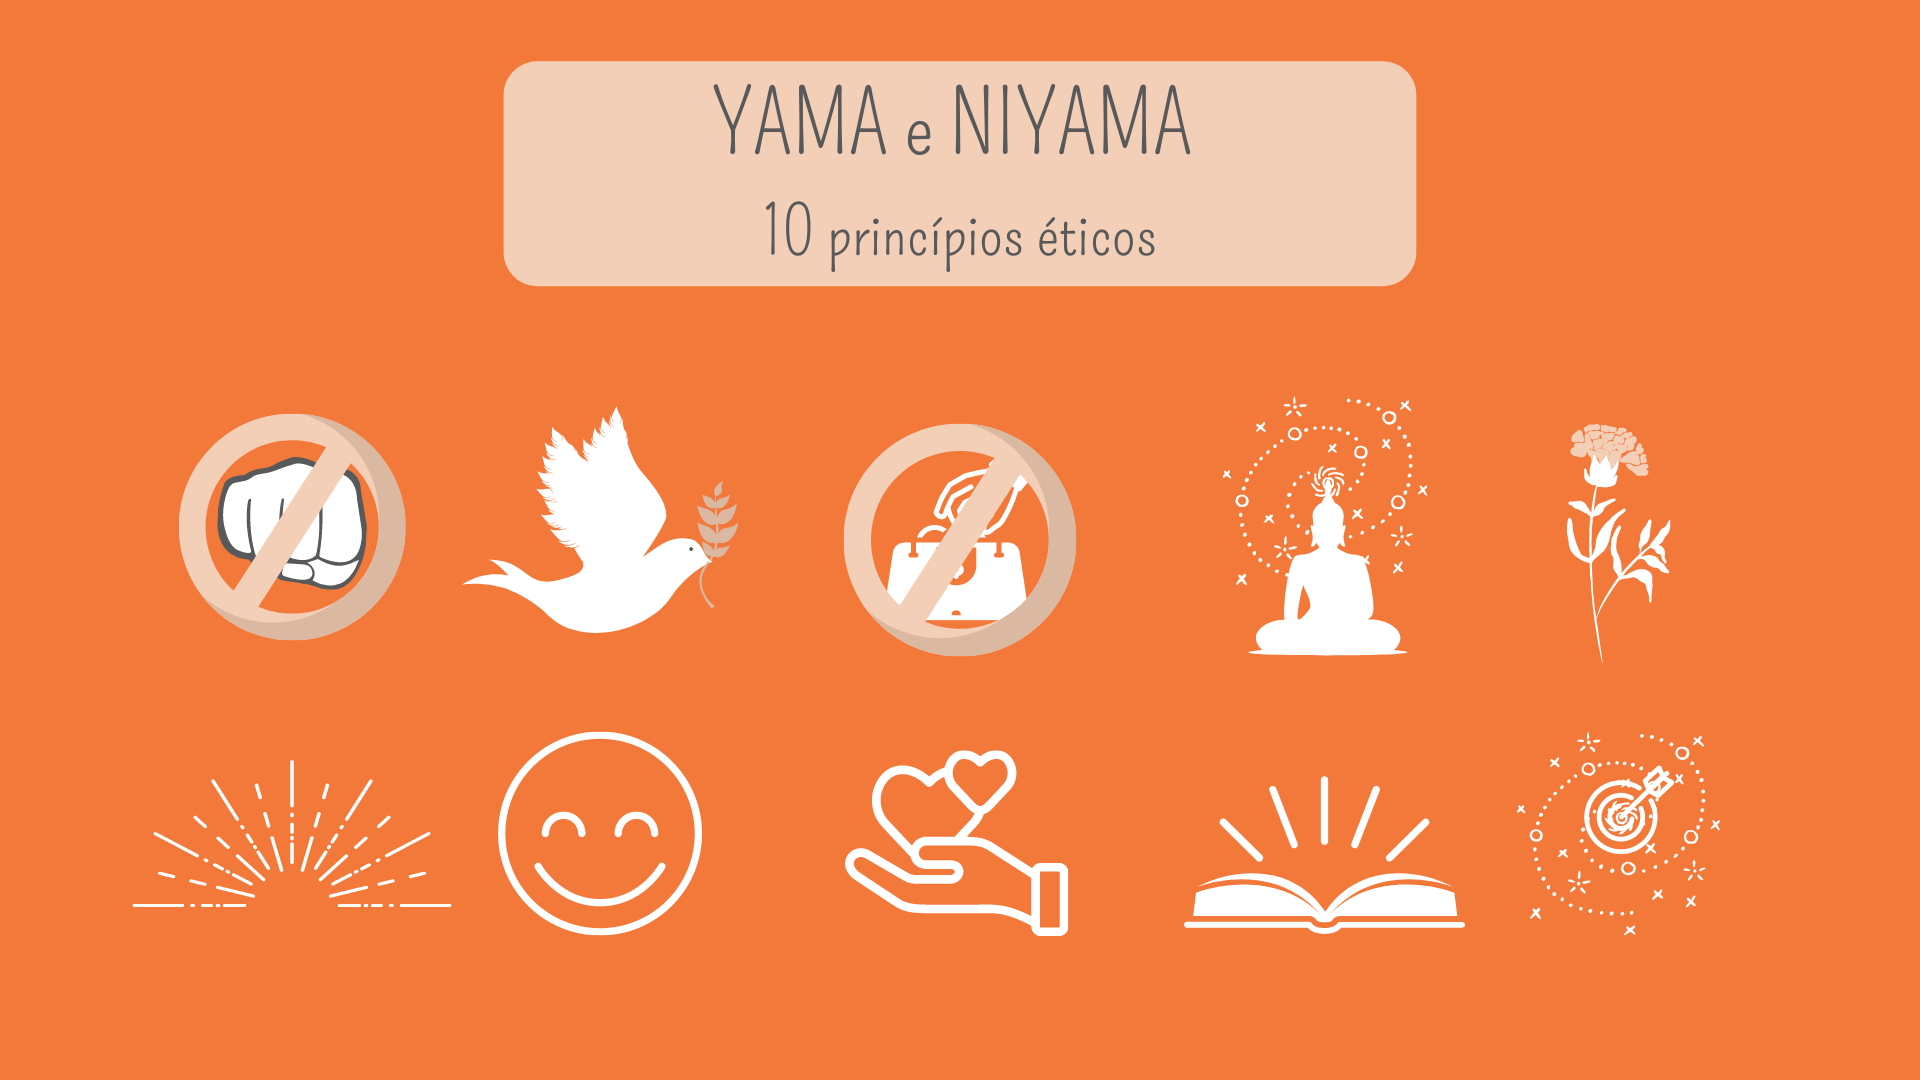  ¿Qué es Yama y Niyama? ¿Conoce los principios del Yoga?